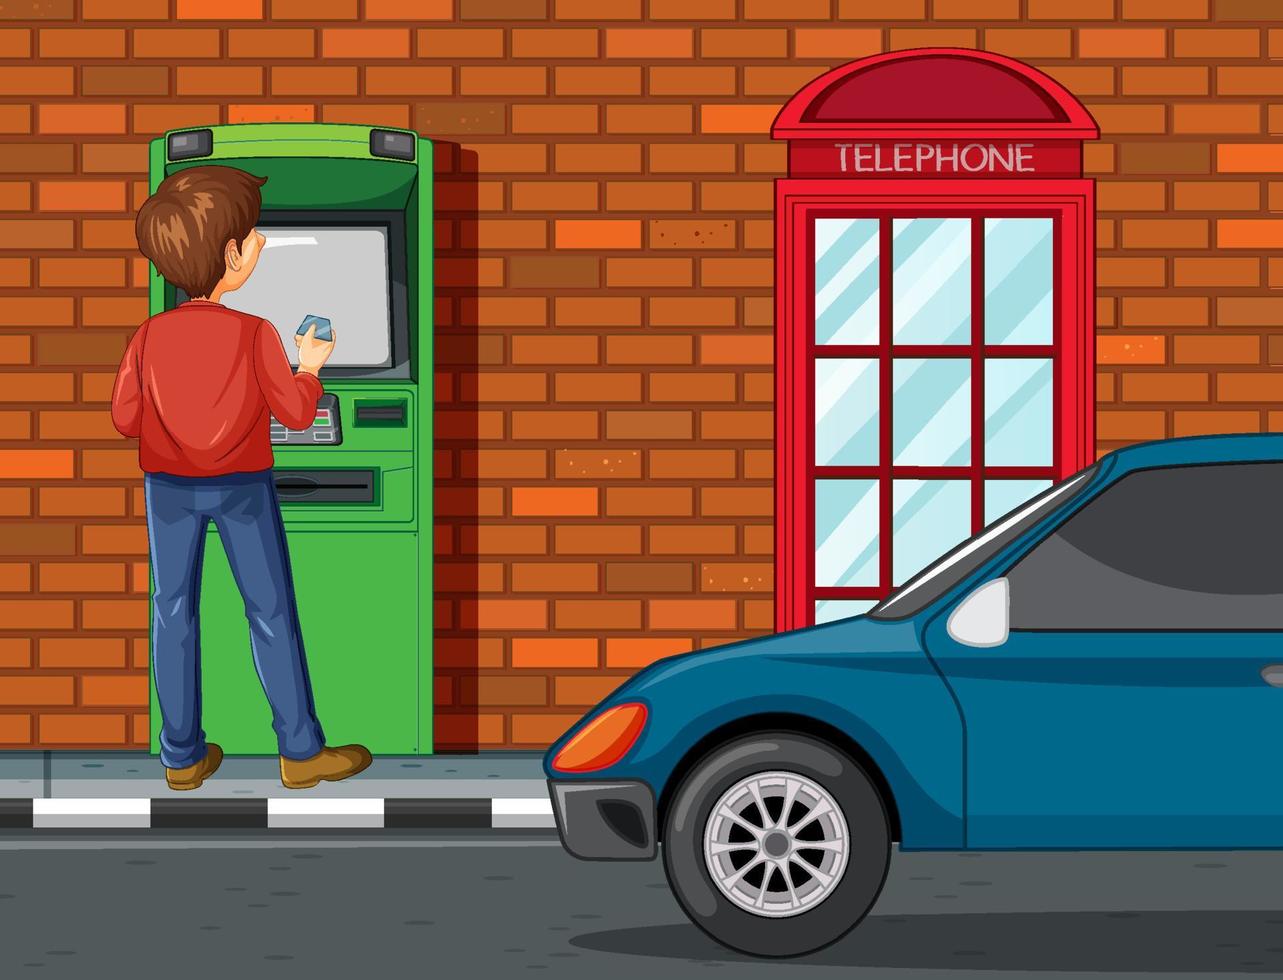 geldautomat auf der straßenszene mit einem mann geld abheben vektor